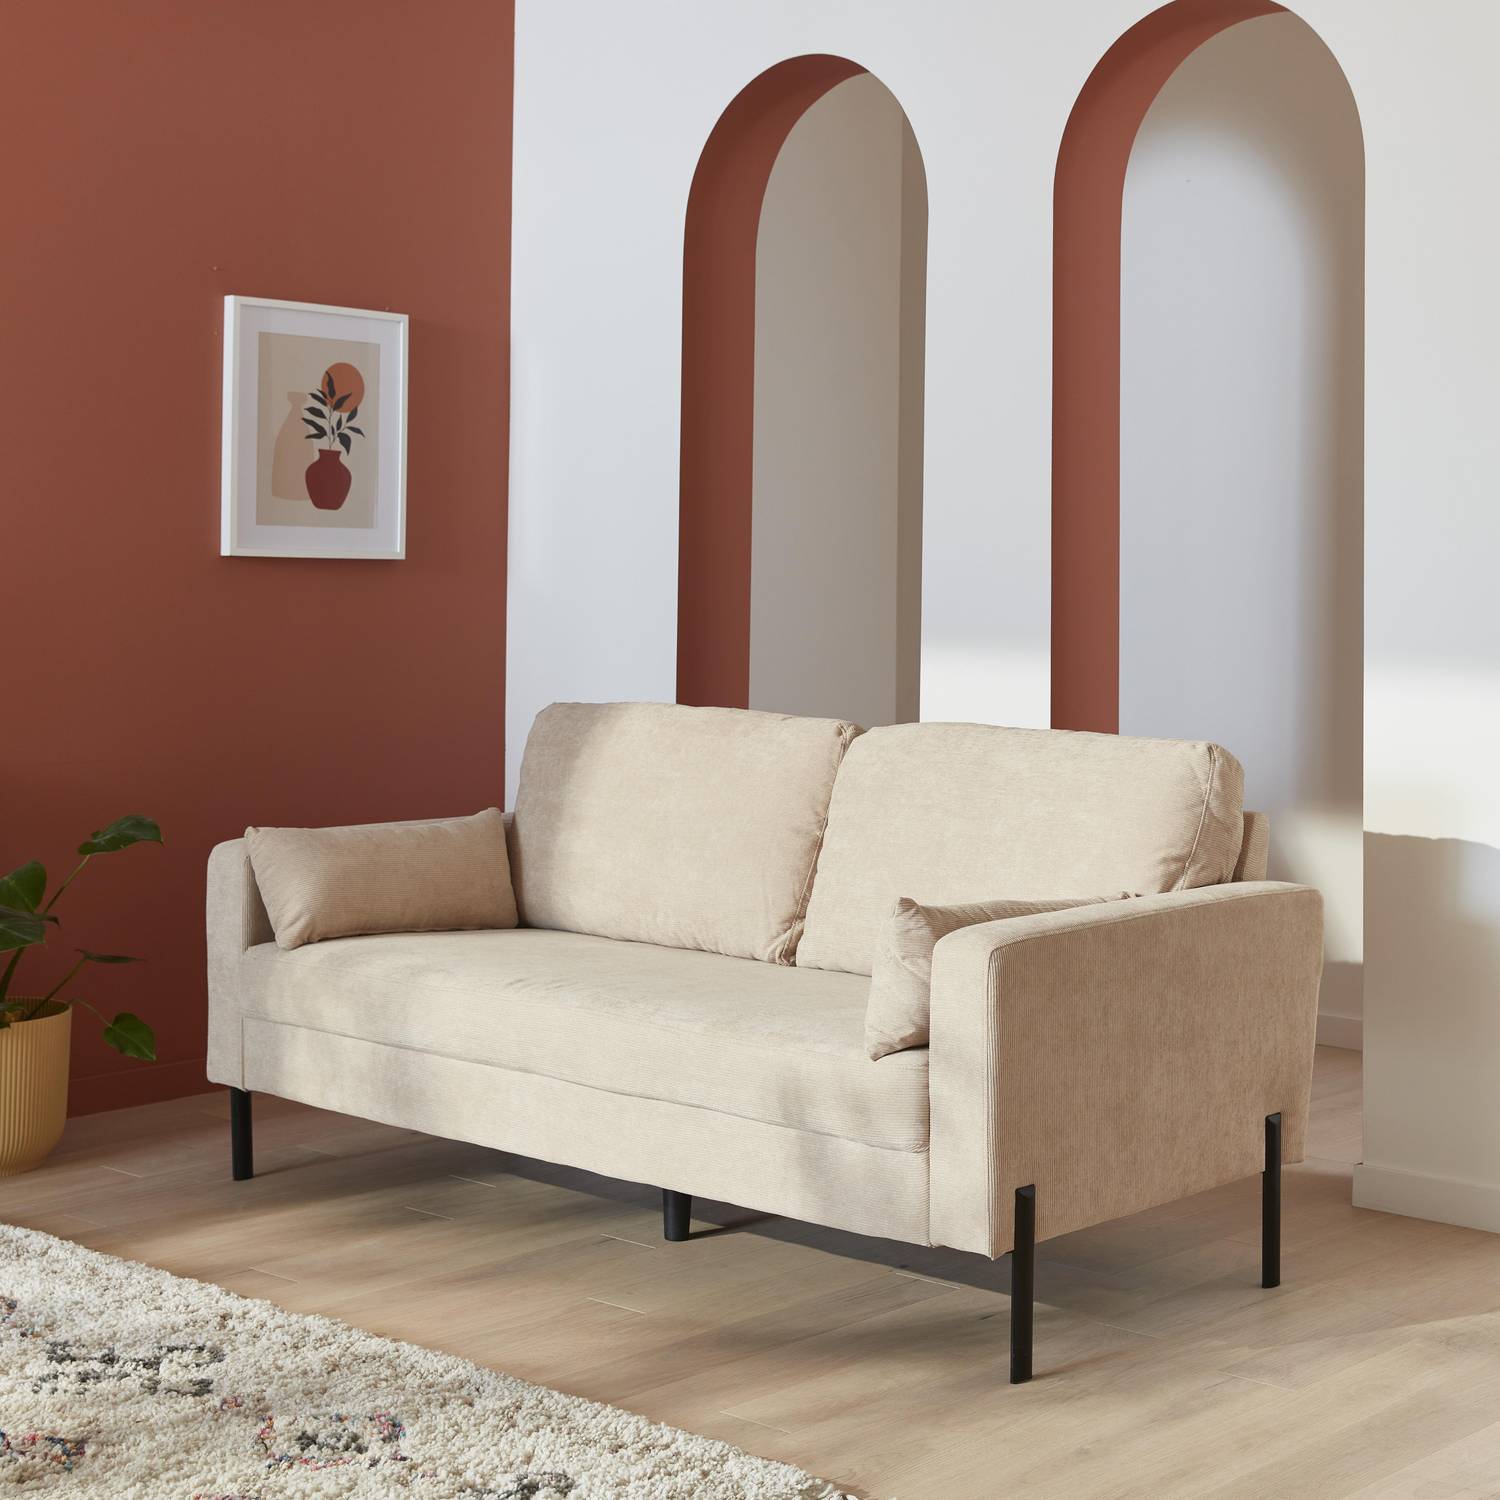 Large 3-seater living room sofa - Beige Corduroy, industrial-style metal legs - Bjorn - Beige Photo2